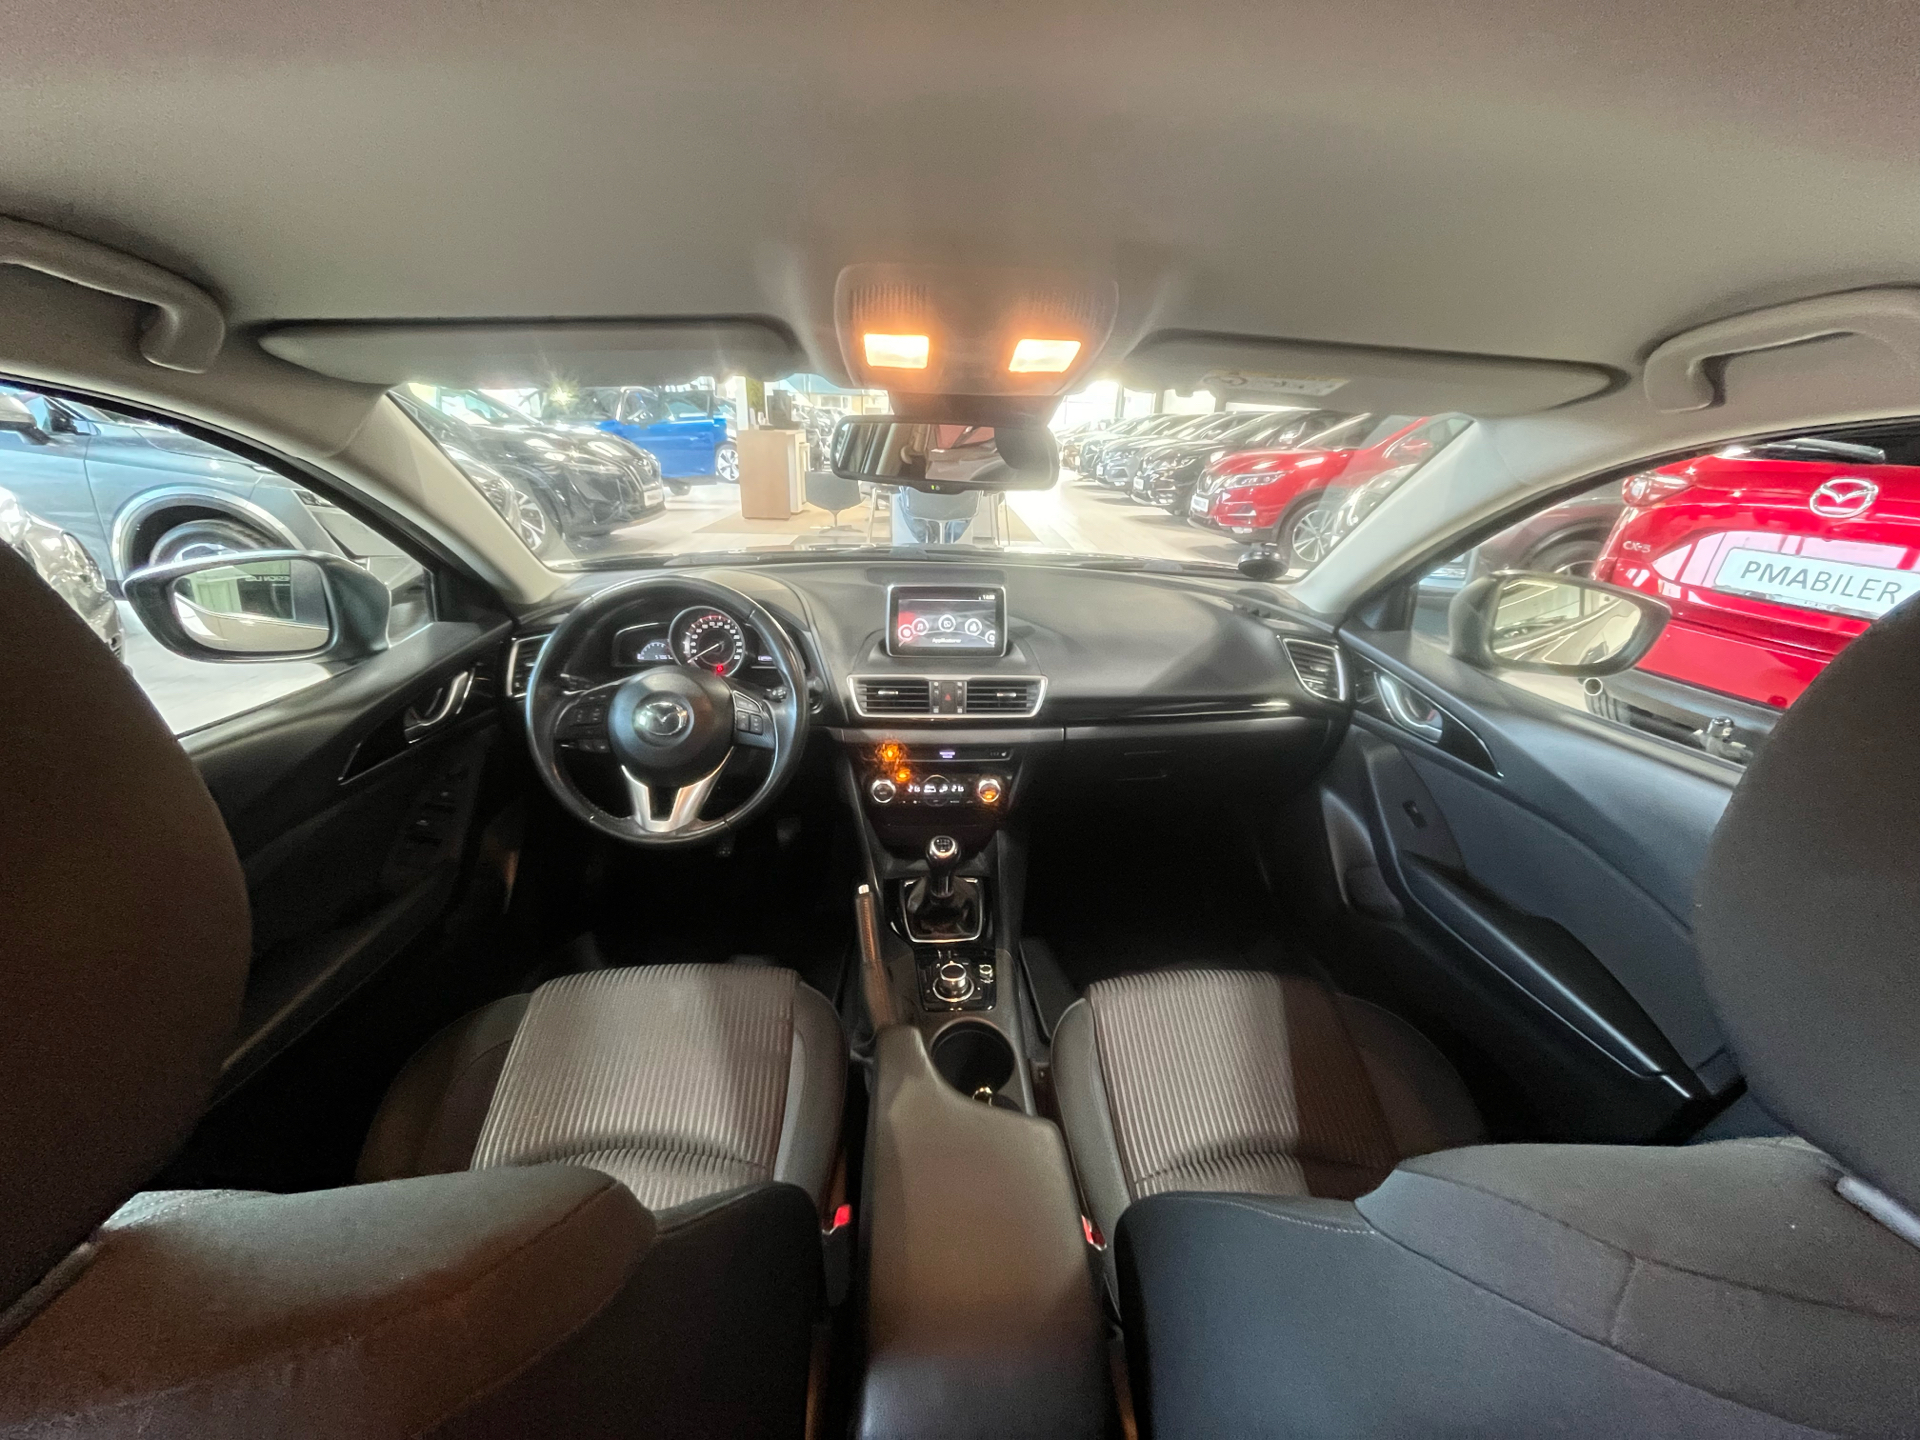 Billede af Mazda 3 2,0 Skyactiv-G Vision 120HK 5d 6g